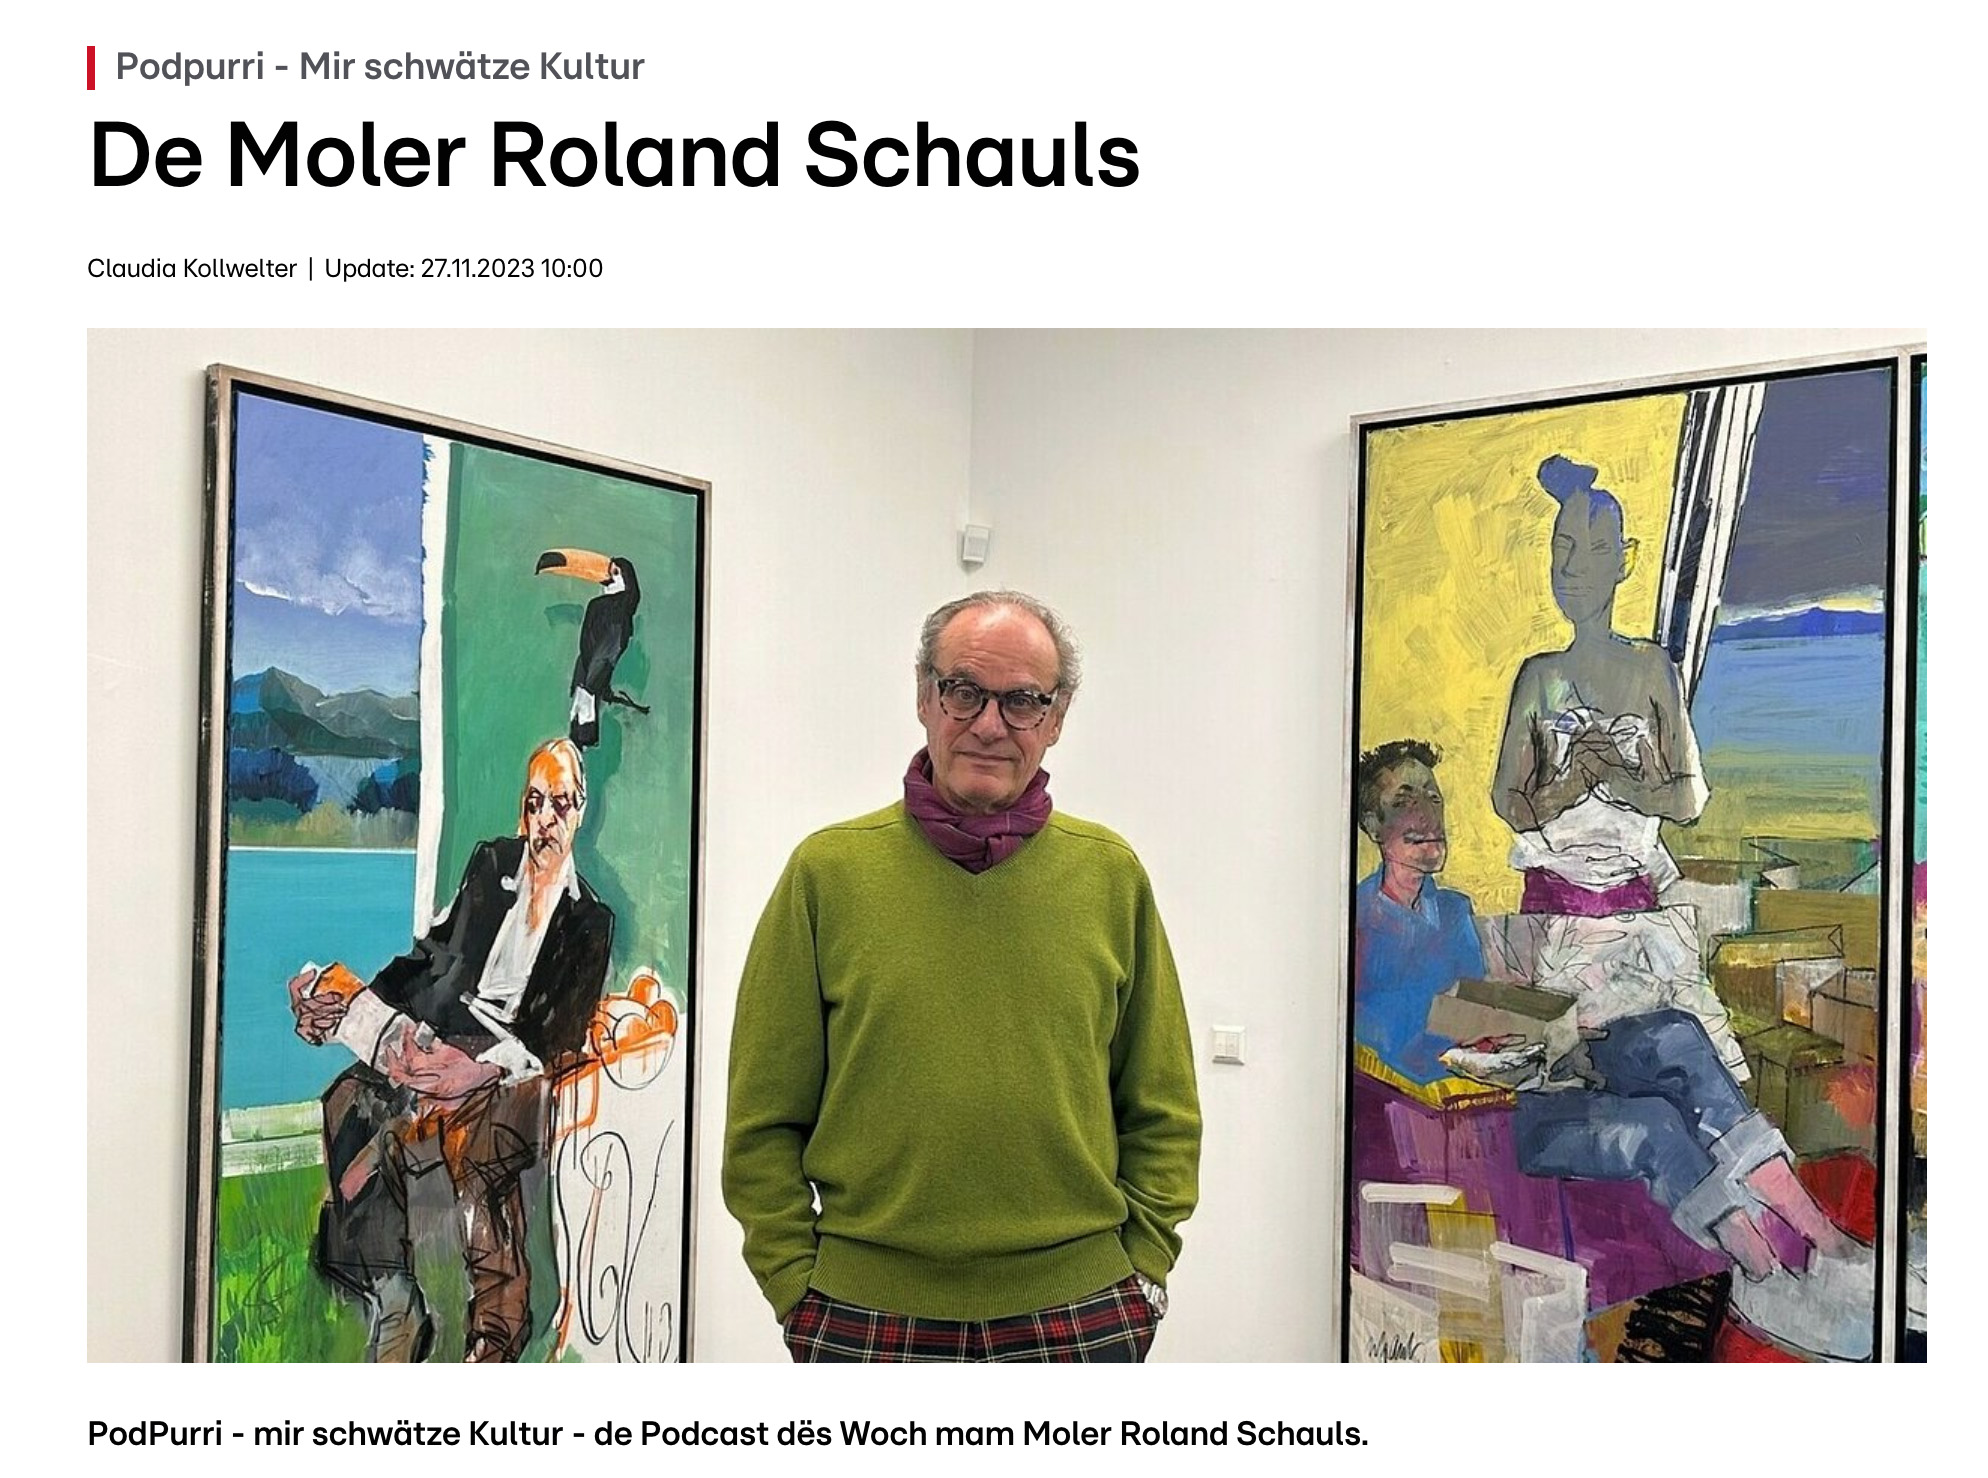 News of Reuter Bausch Art Gallery  Podpurri - Mir schwtze Kultur De Moler Roland Schauls 